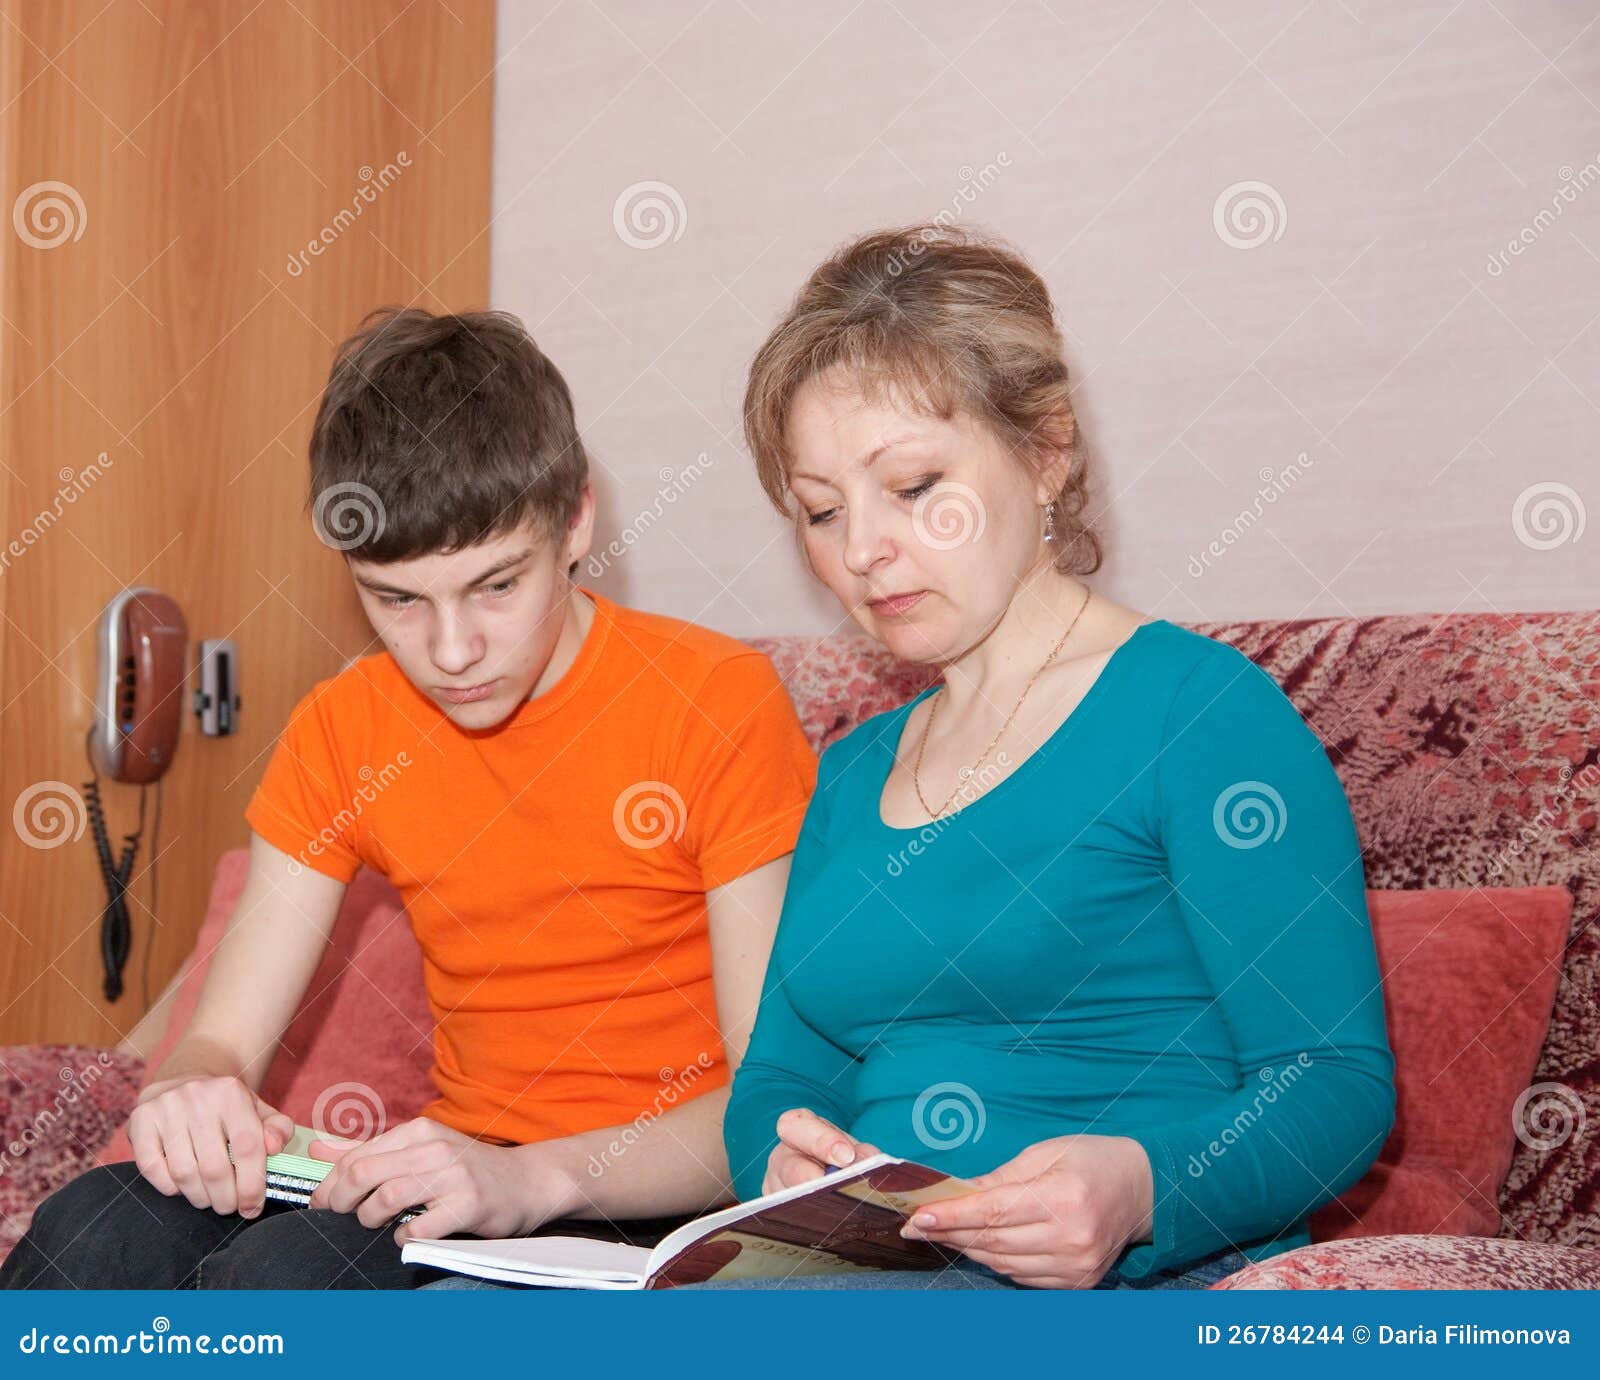 Мама учит сыночка. Мать проводит сына. Мать и сын учатся. Мама показывает сыну картинку. Мама помогает сыну с уроками.